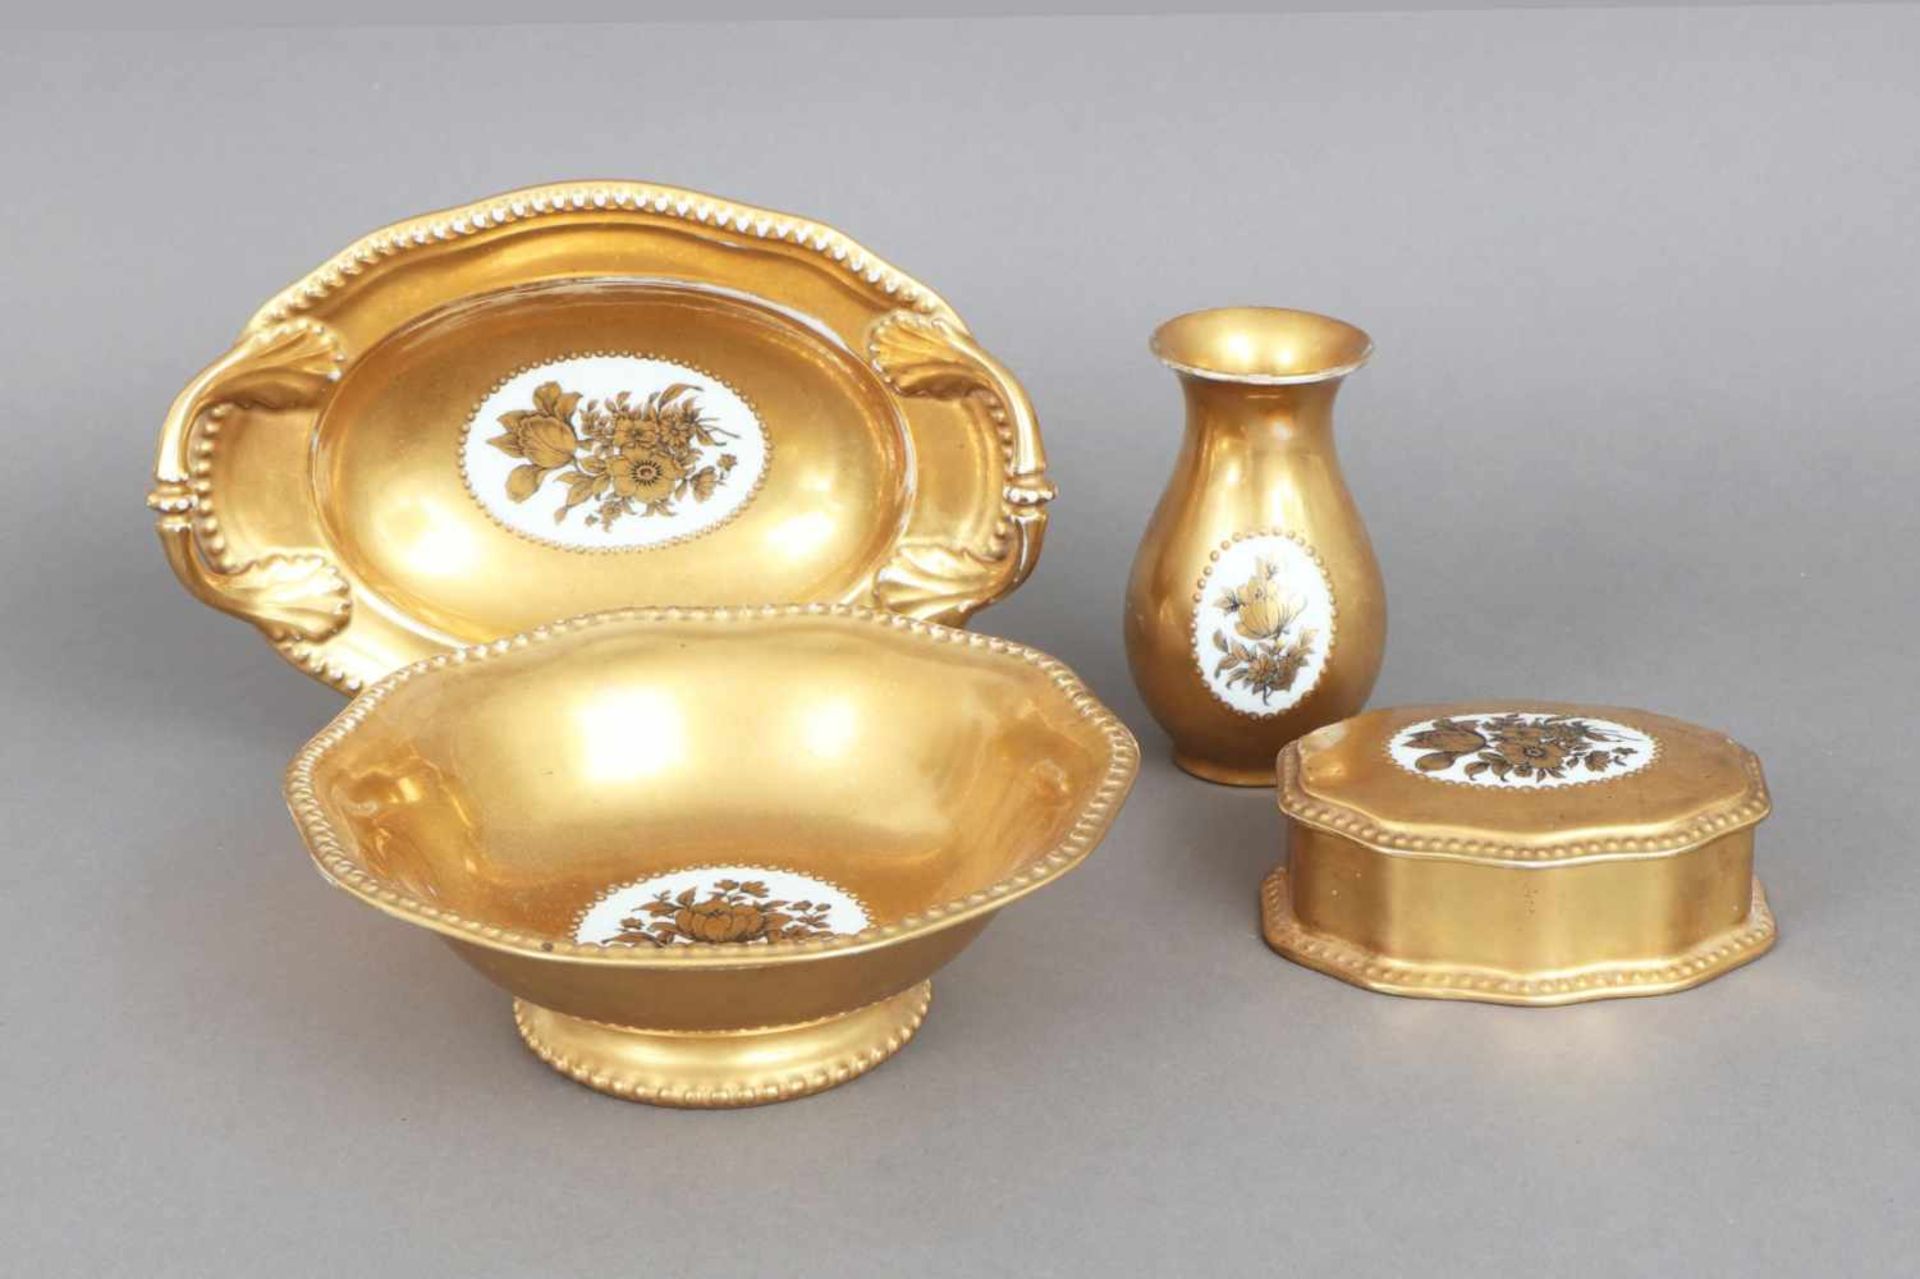 4 Teile ROSENTHAL Porzellan1920er Jahre, bestehend aus 1 Deckeldose, 1 Vase und 2 Schalen,